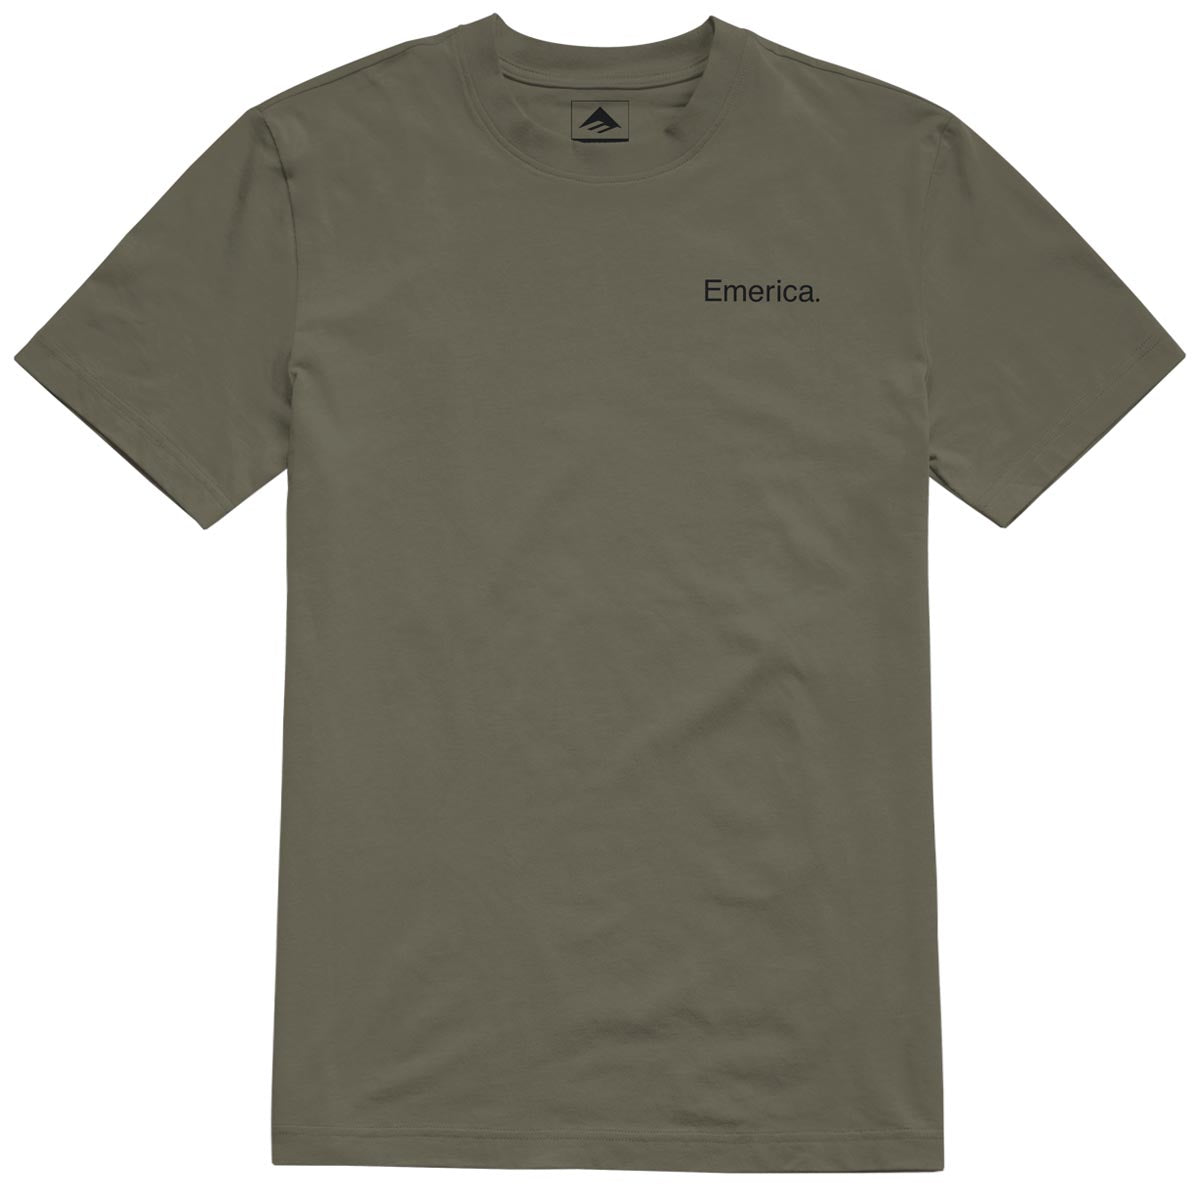 Emerica Lockup T-Shirt - Moss image 1